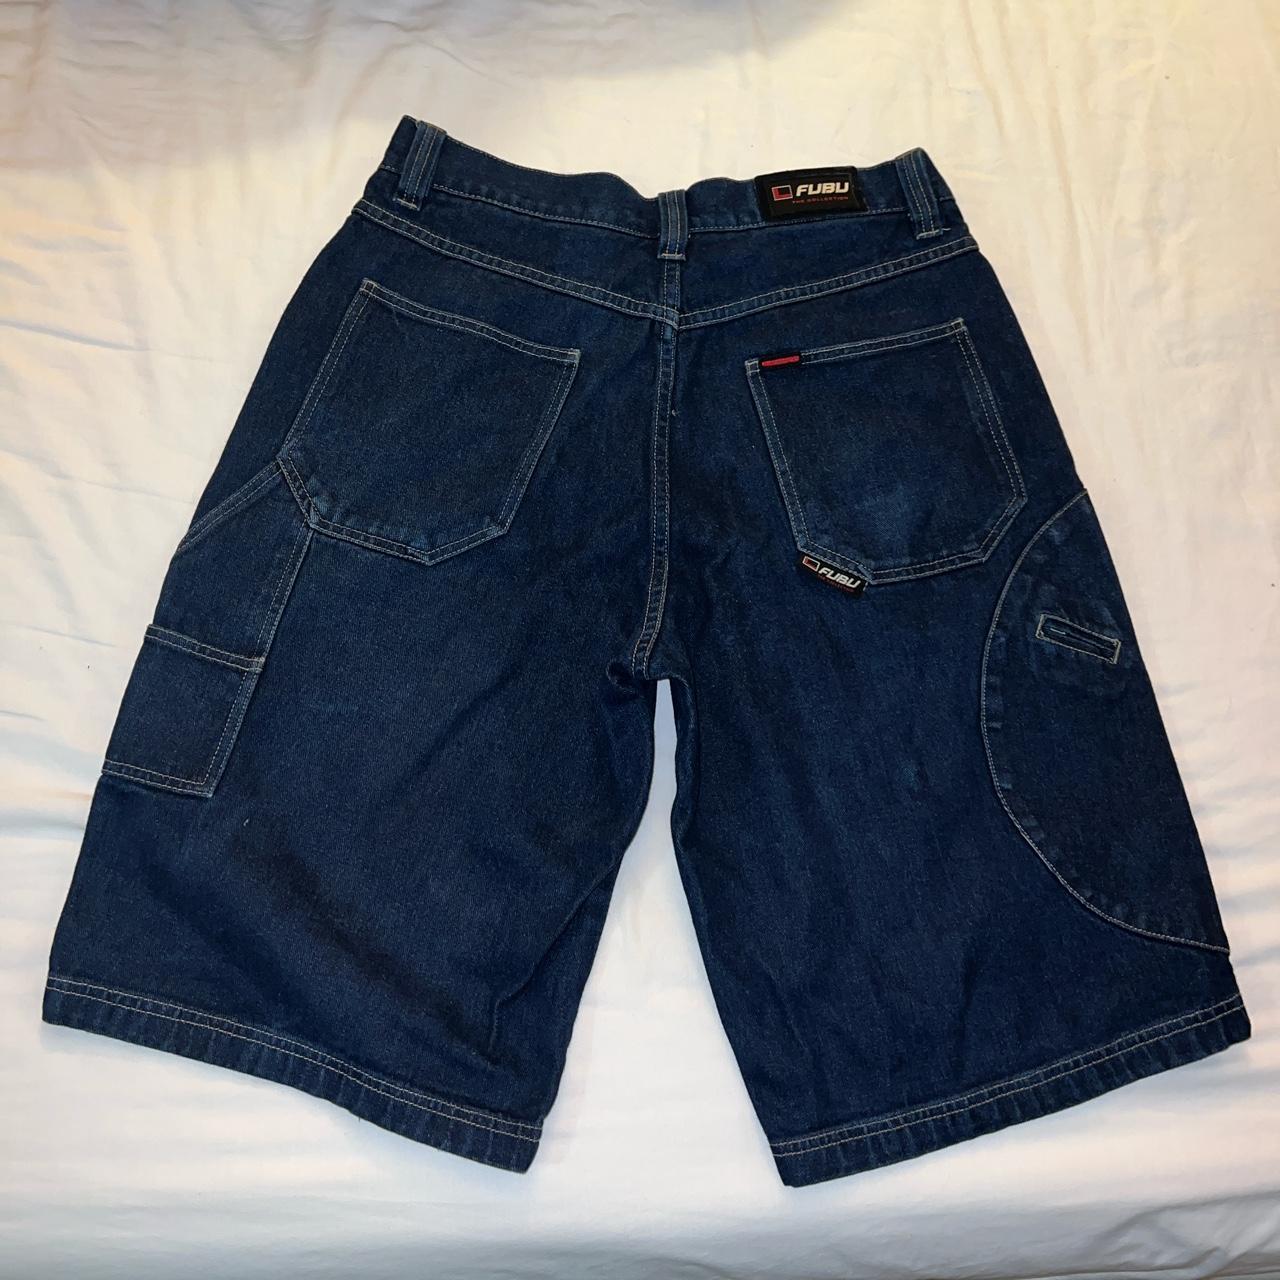 Men’s vintage FUBU Jean cargo shorts size 34 in... - Depop